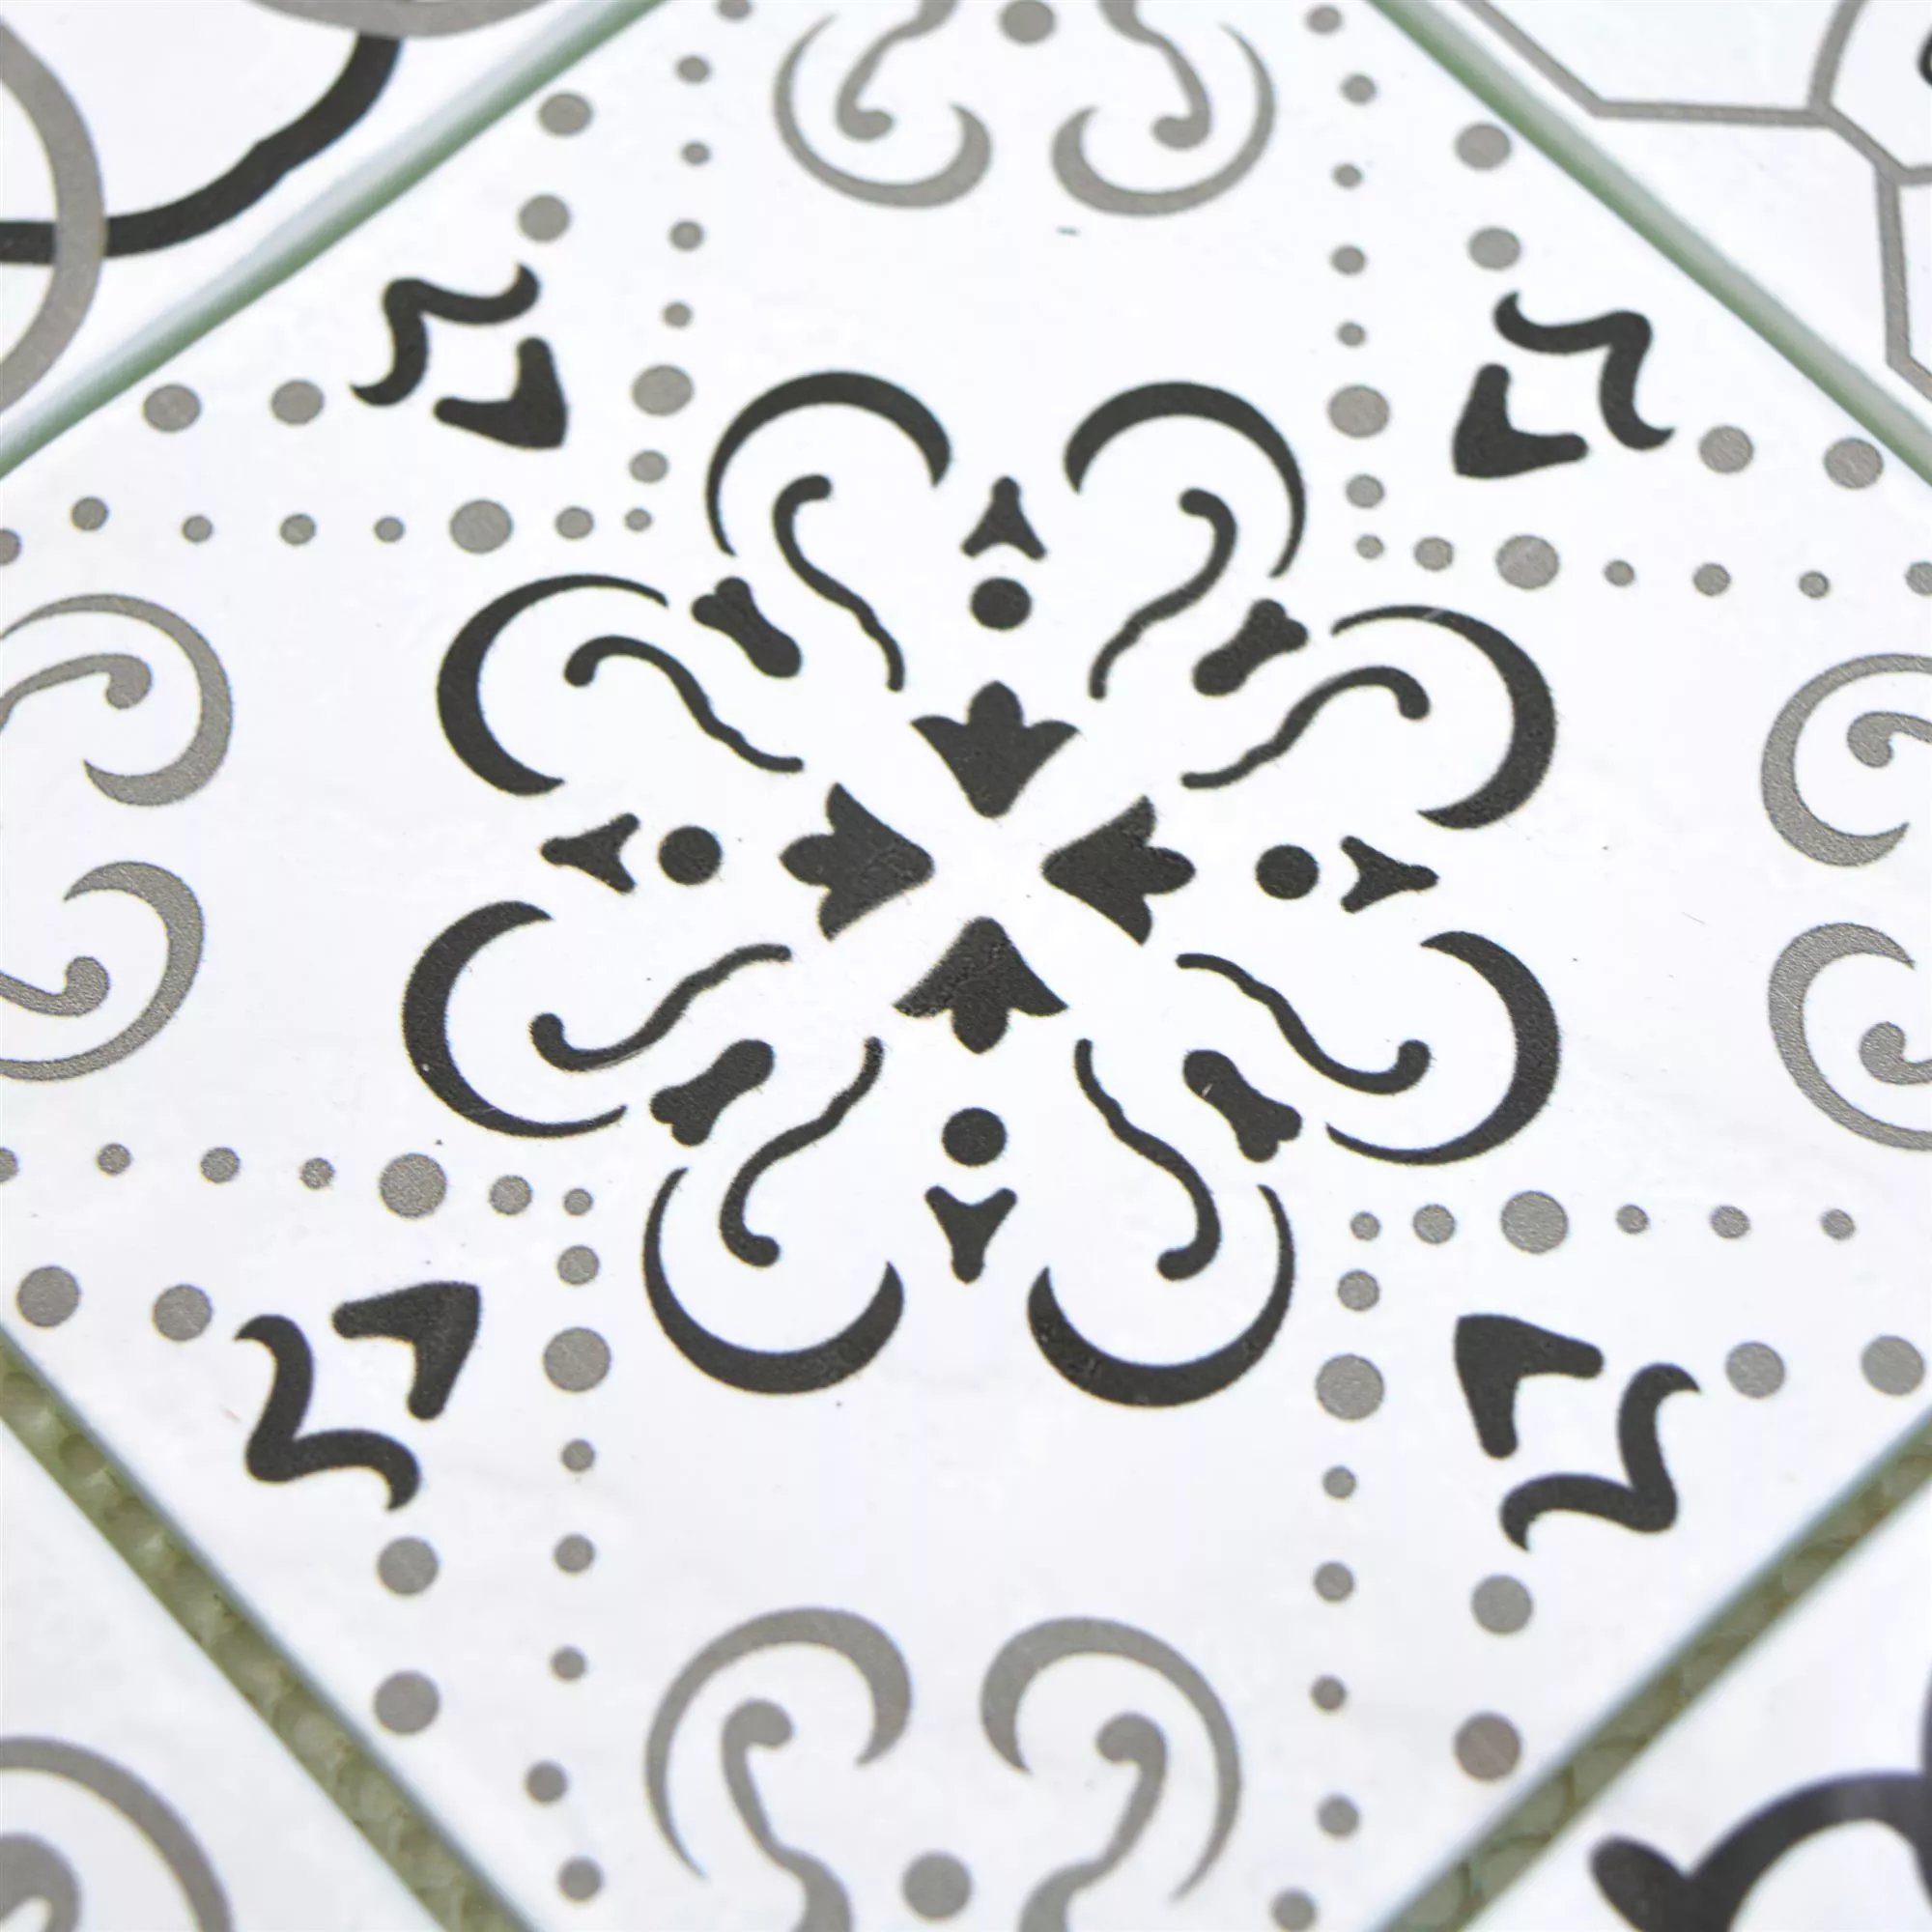 Sample Glass Mosaic Tiles Starlite Retro Black White 